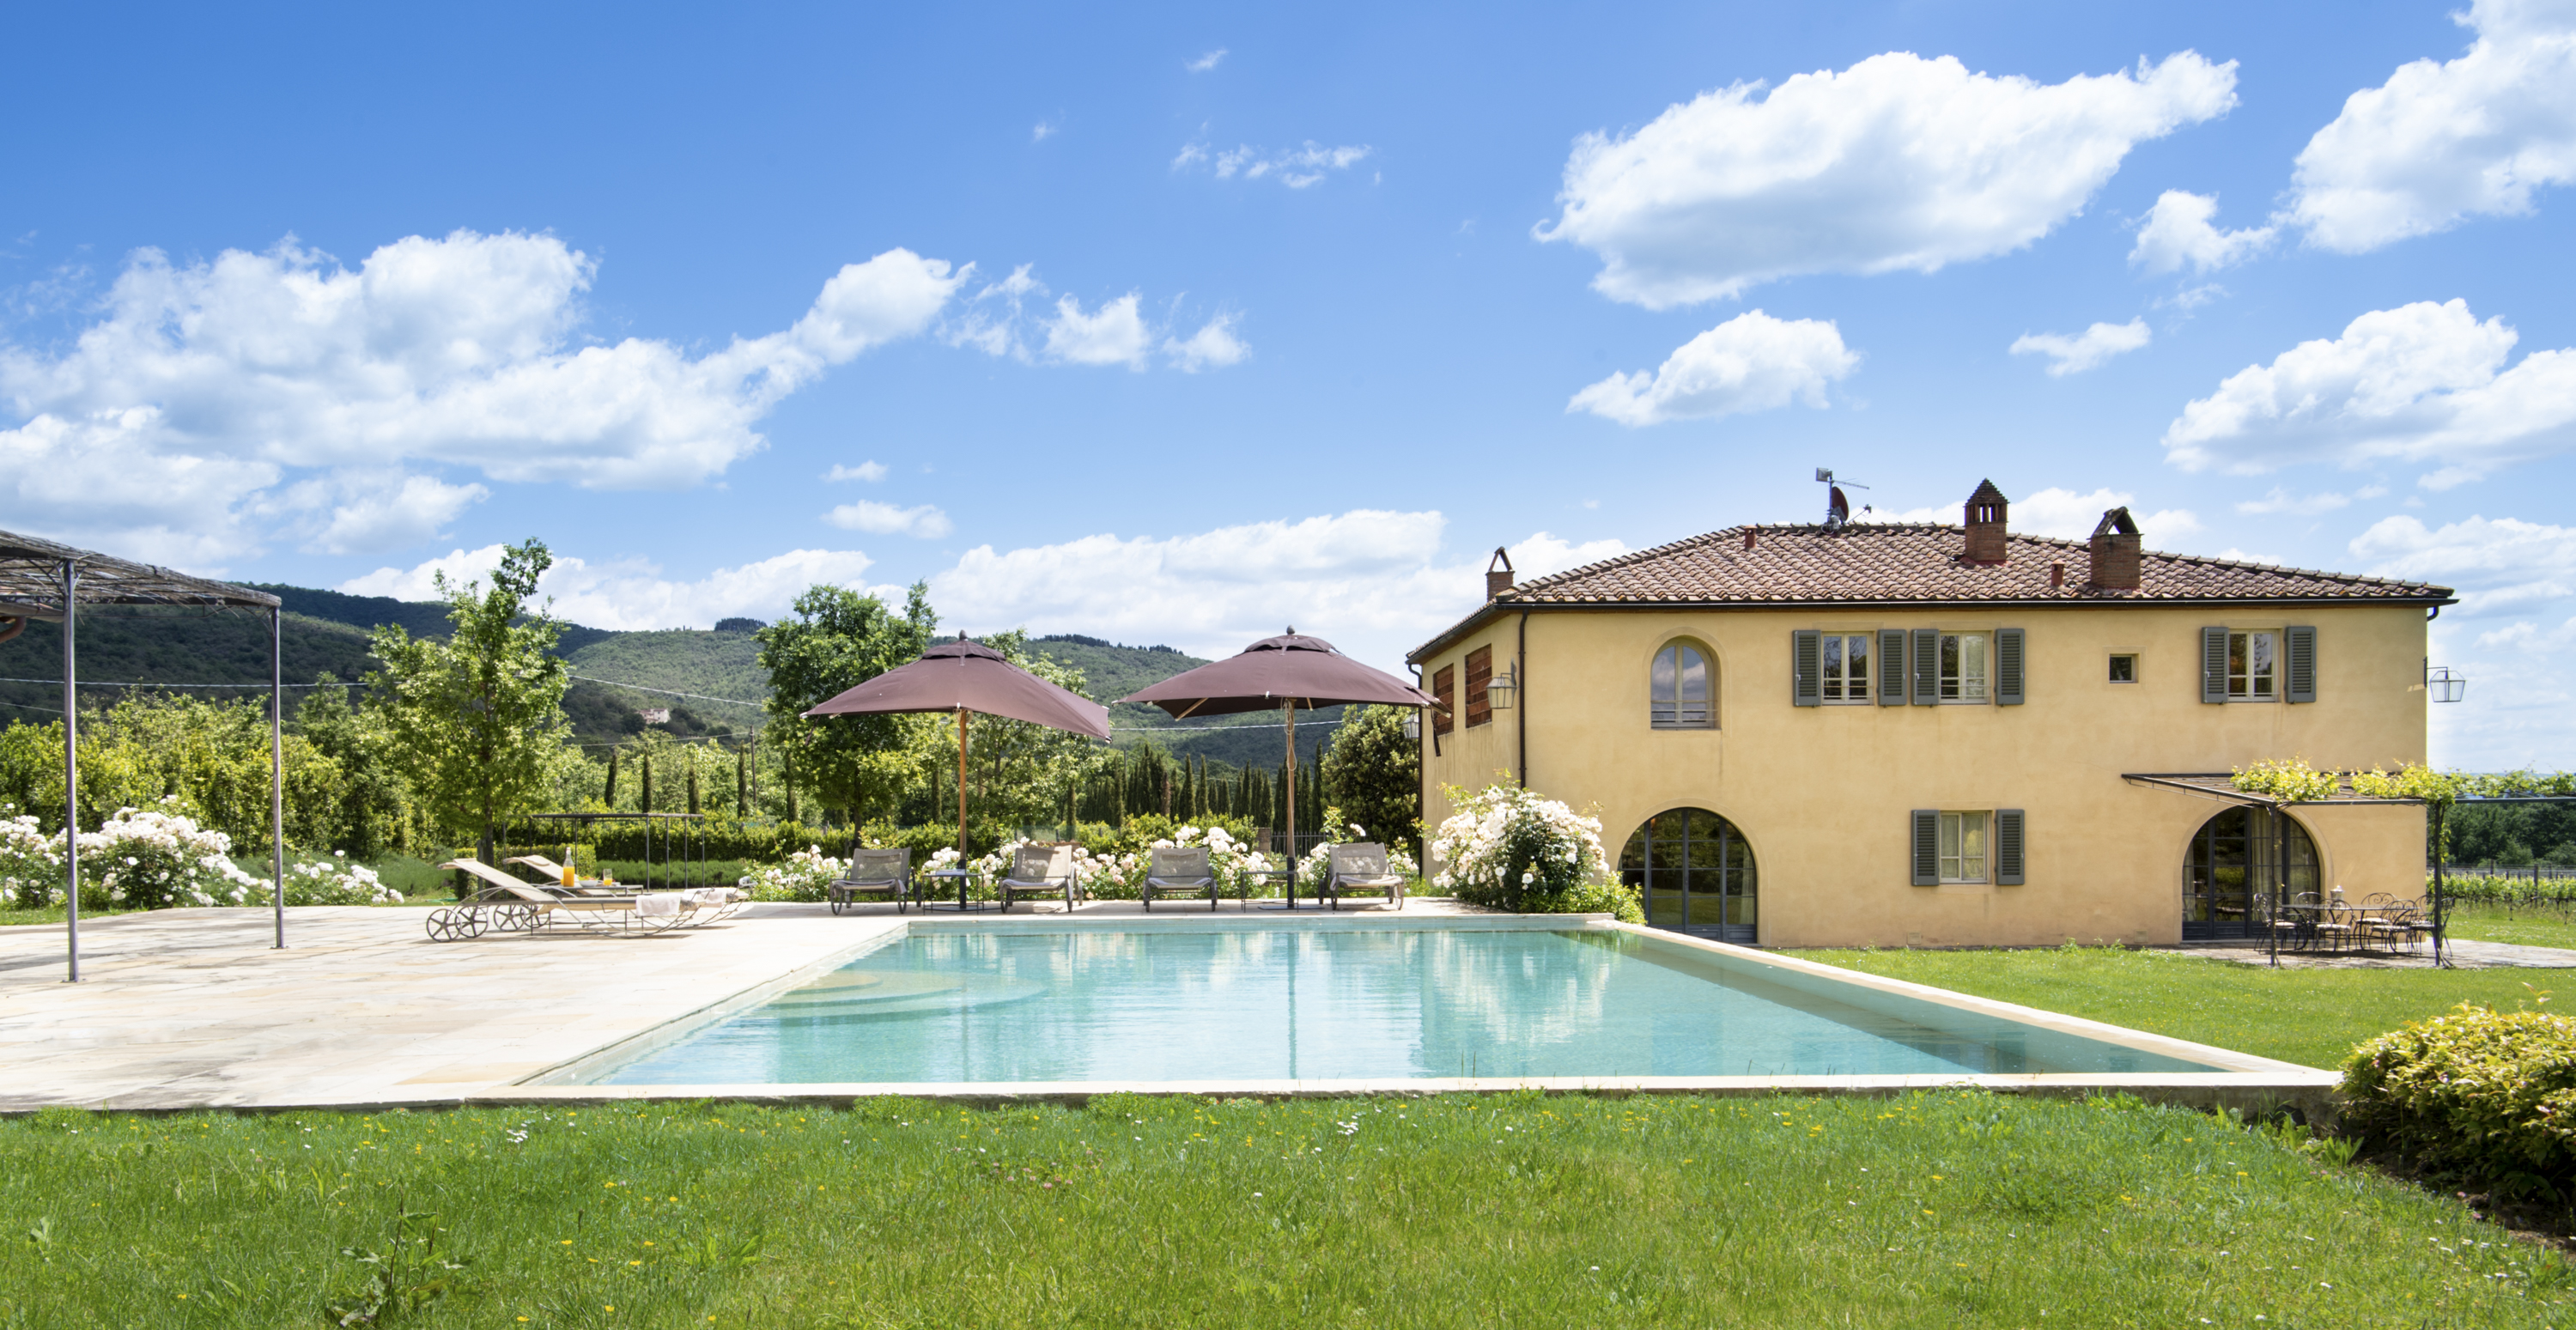 Villa Casetta at Il Borro Tuscany